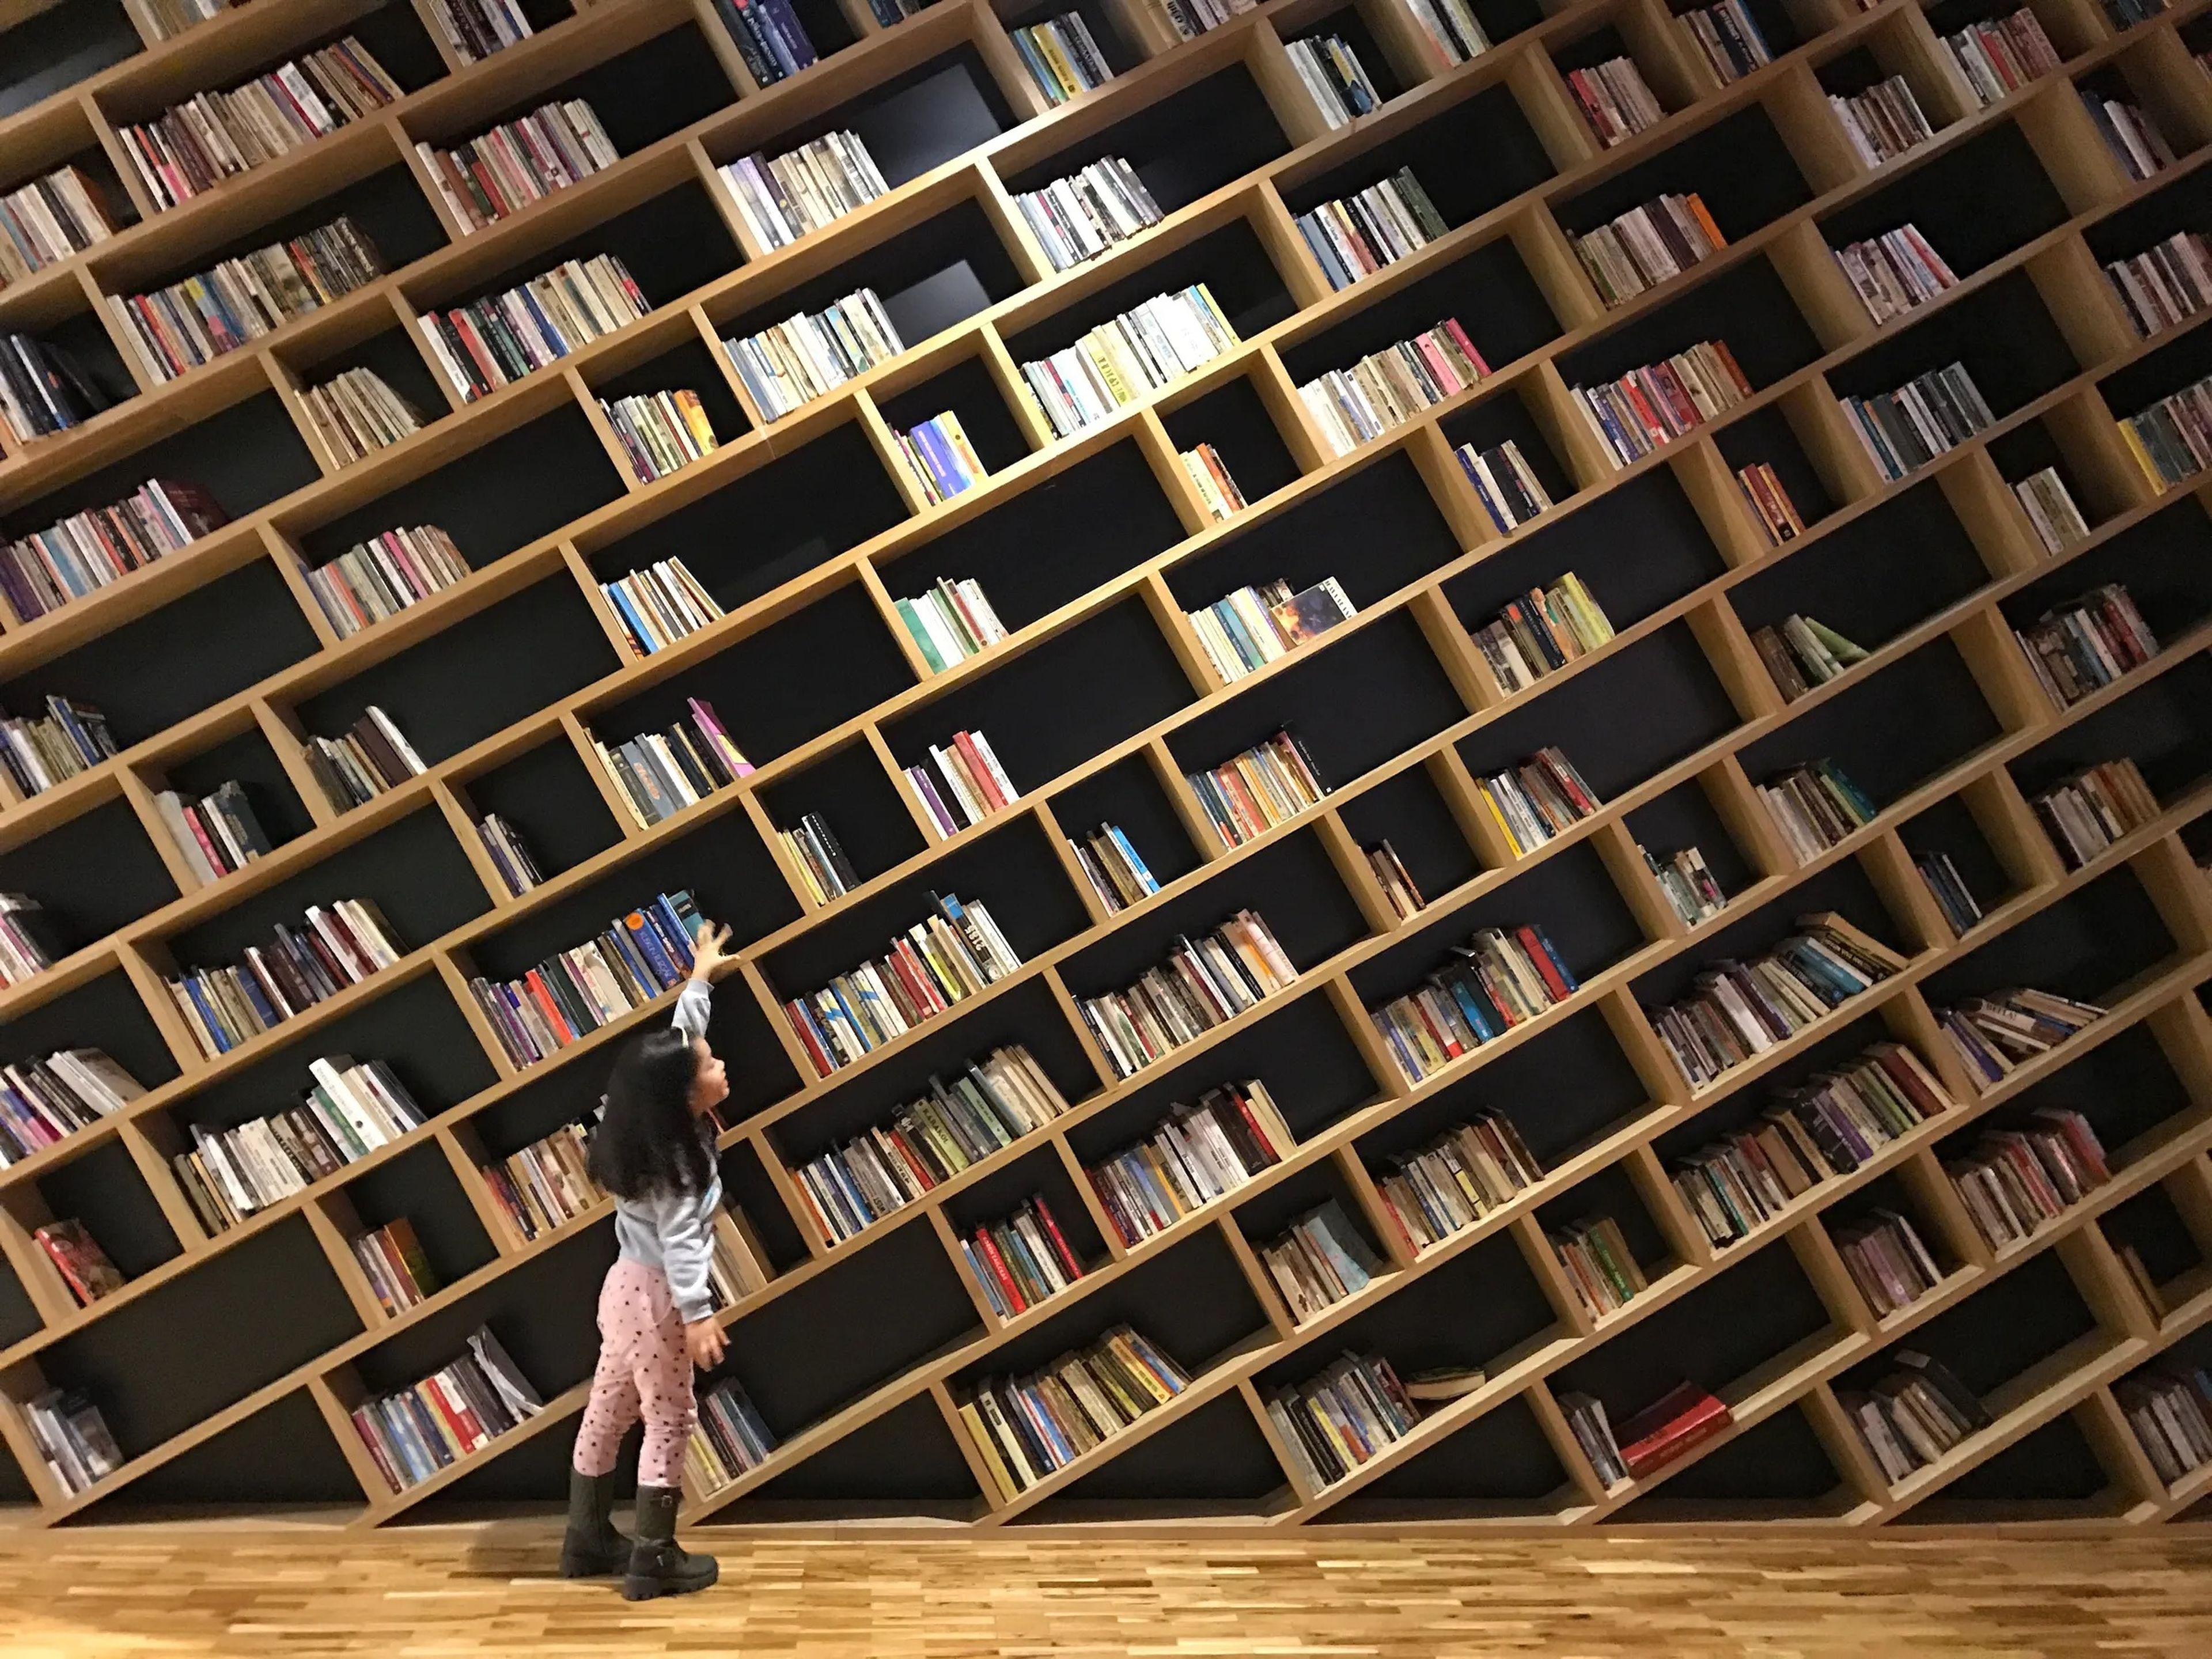 Una niña intenta coger un libro de una estantería.